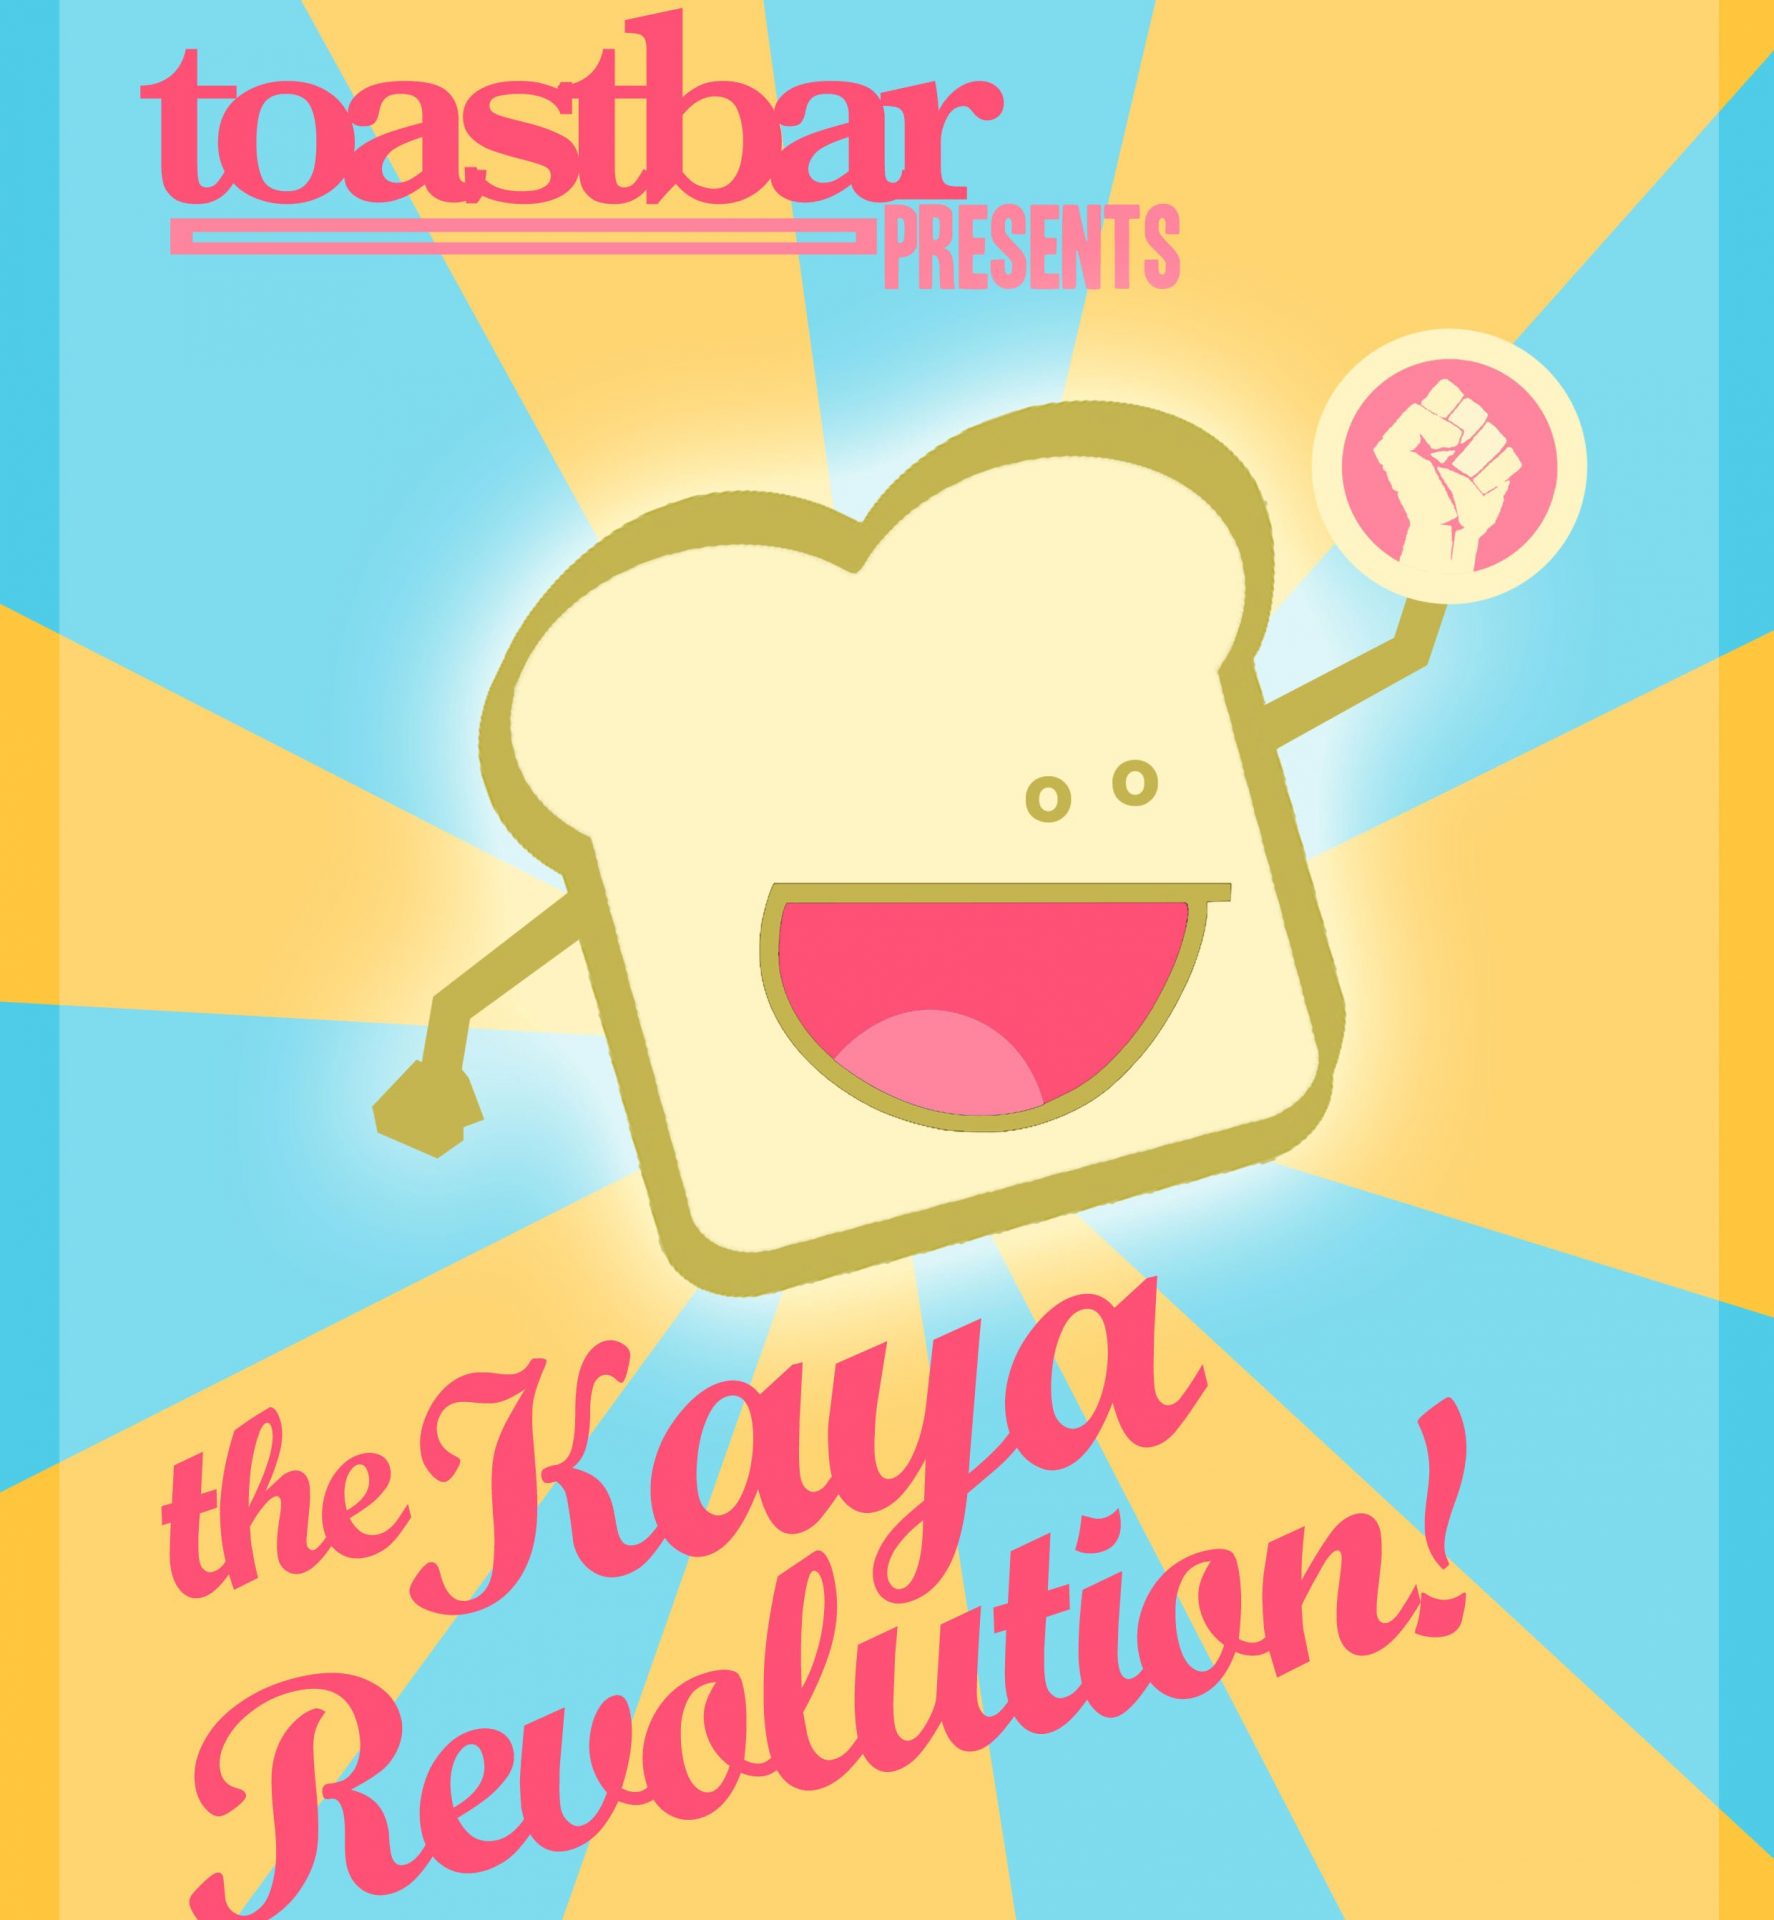 Toastbar Kaya revolution